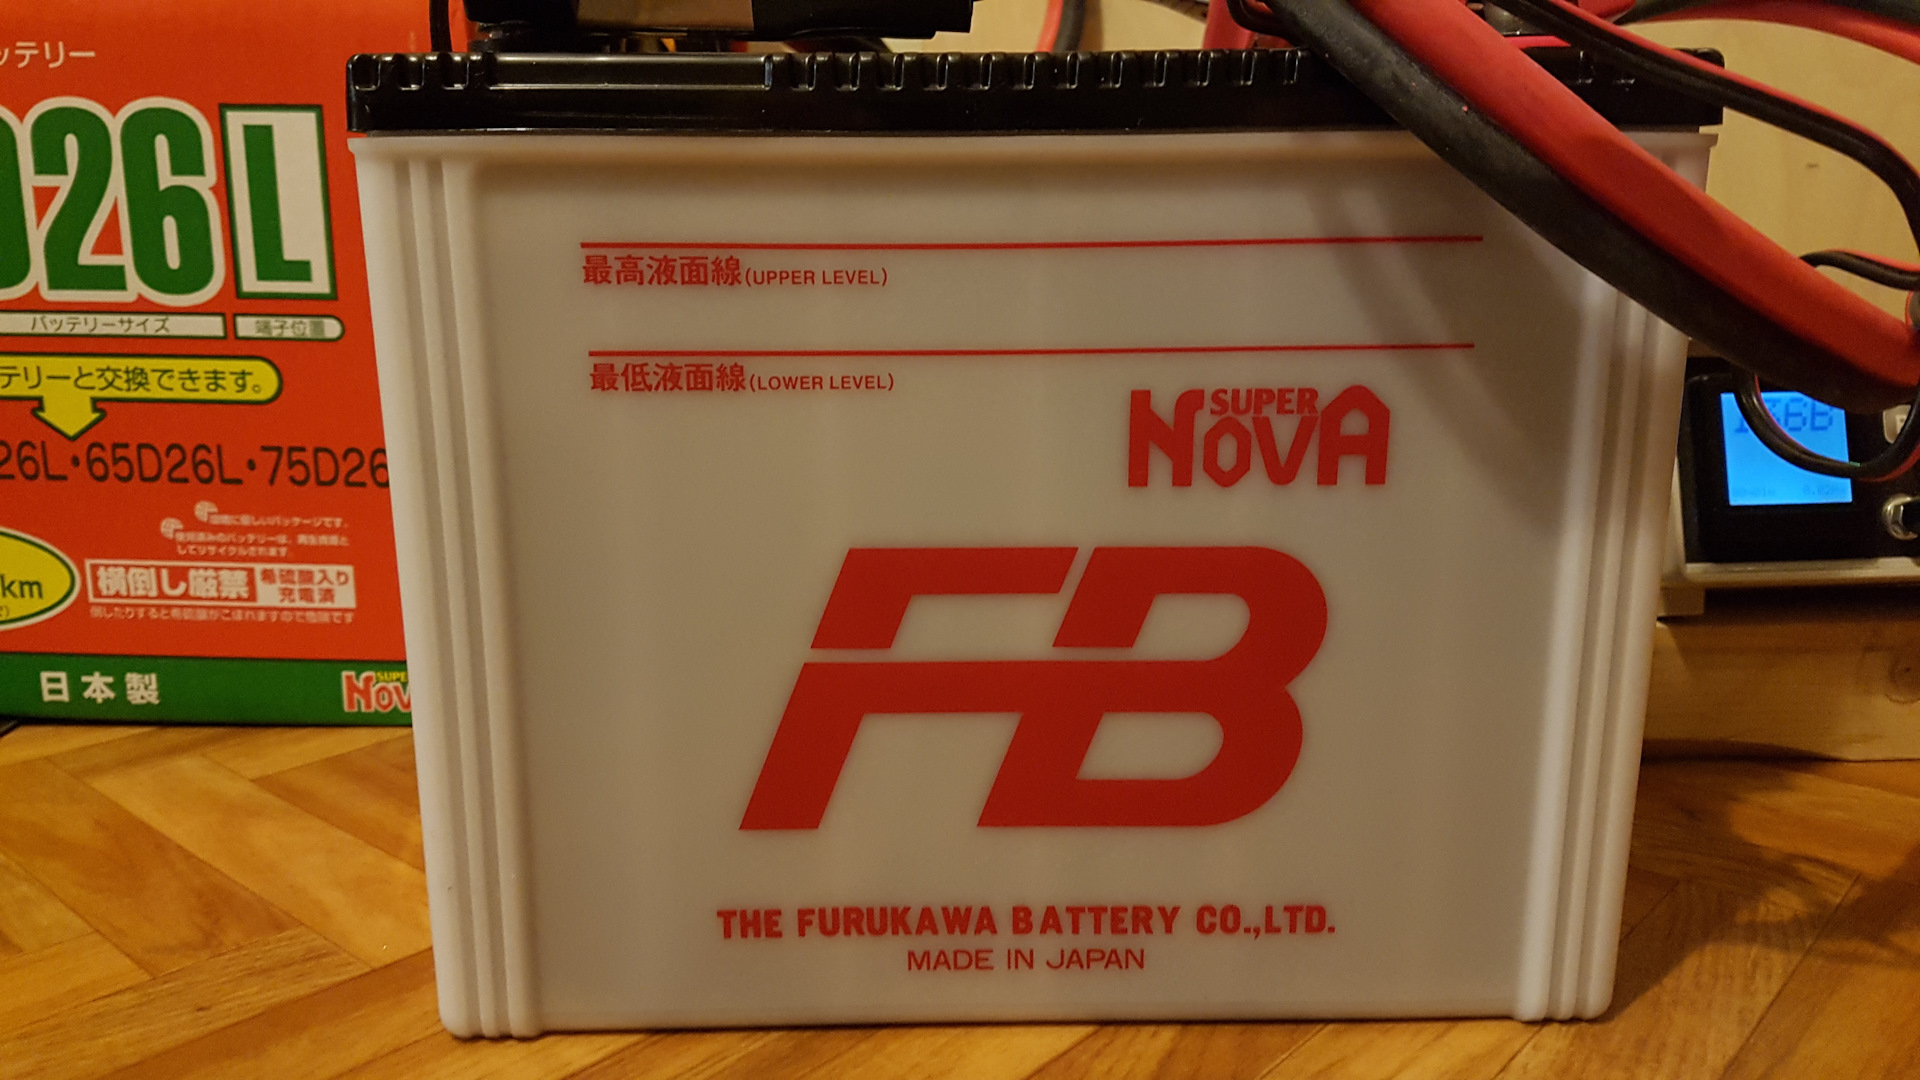 Battery 80. 80d26l Furukawa. Furukawa Battery 80d26l. АКБ GS 80d26l для Митсубиси. Furukawa Battery super Nova 80d26l.